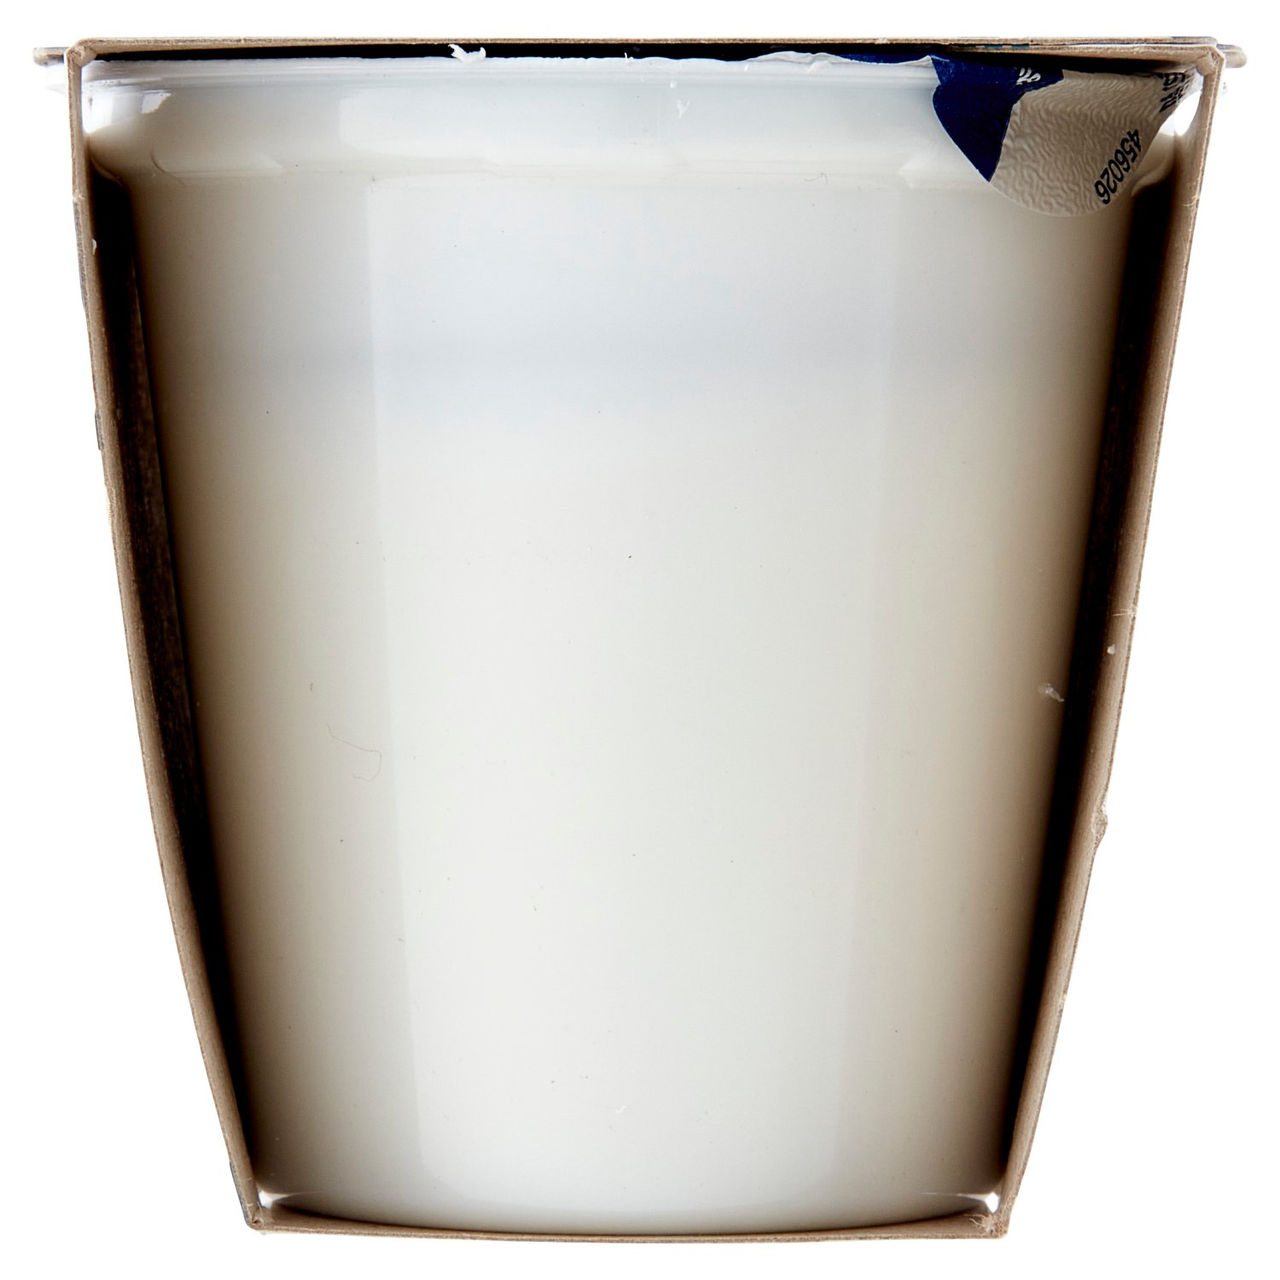 I Cremosi Bianco Dolce Yogurt Intero 2x125g Conad